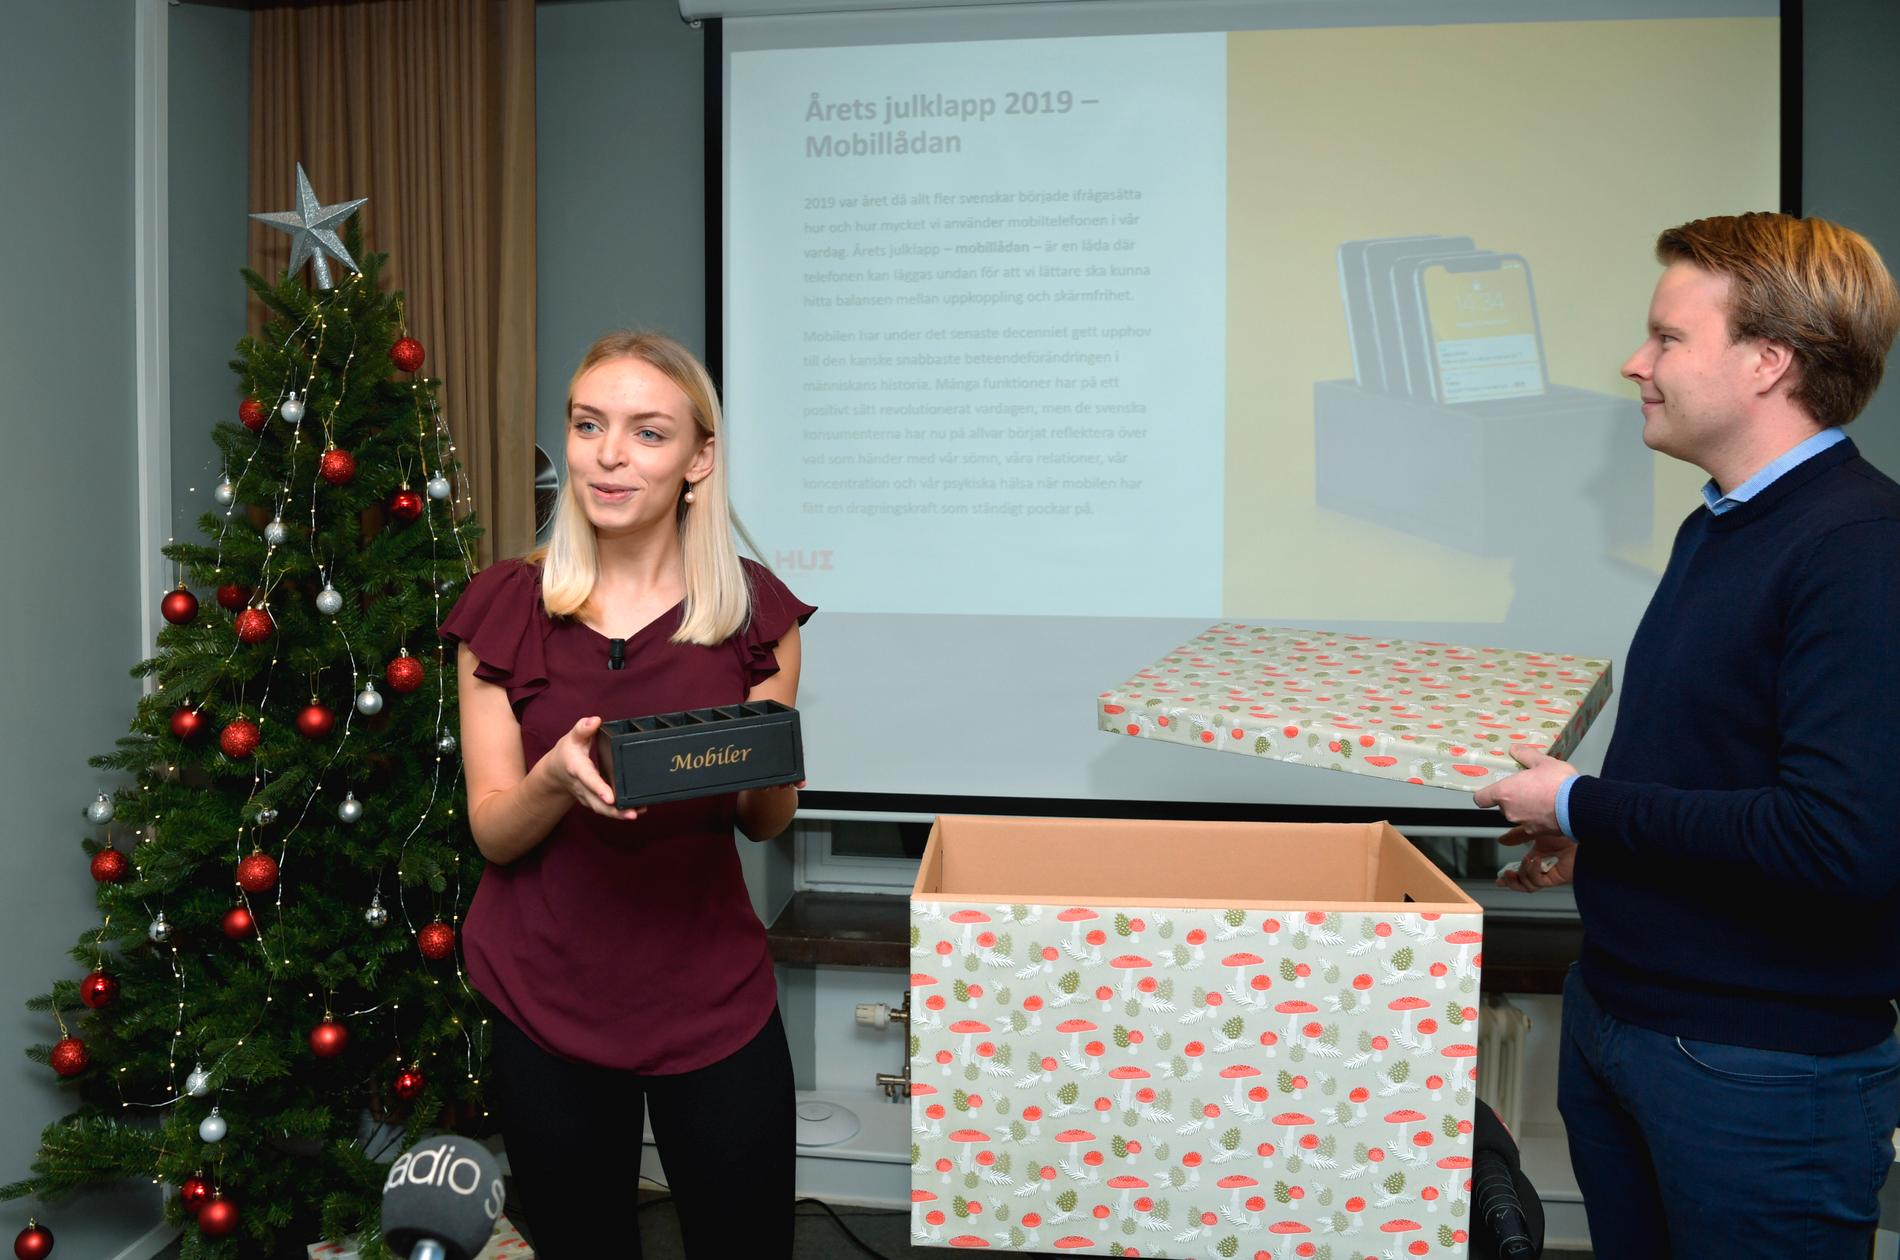 HUI:s analytiker Saga Bowallius och Erik Jonsson presenterar årets julklapp som är en mobillåda, under en press träff på huvudkontoret i Stockholm